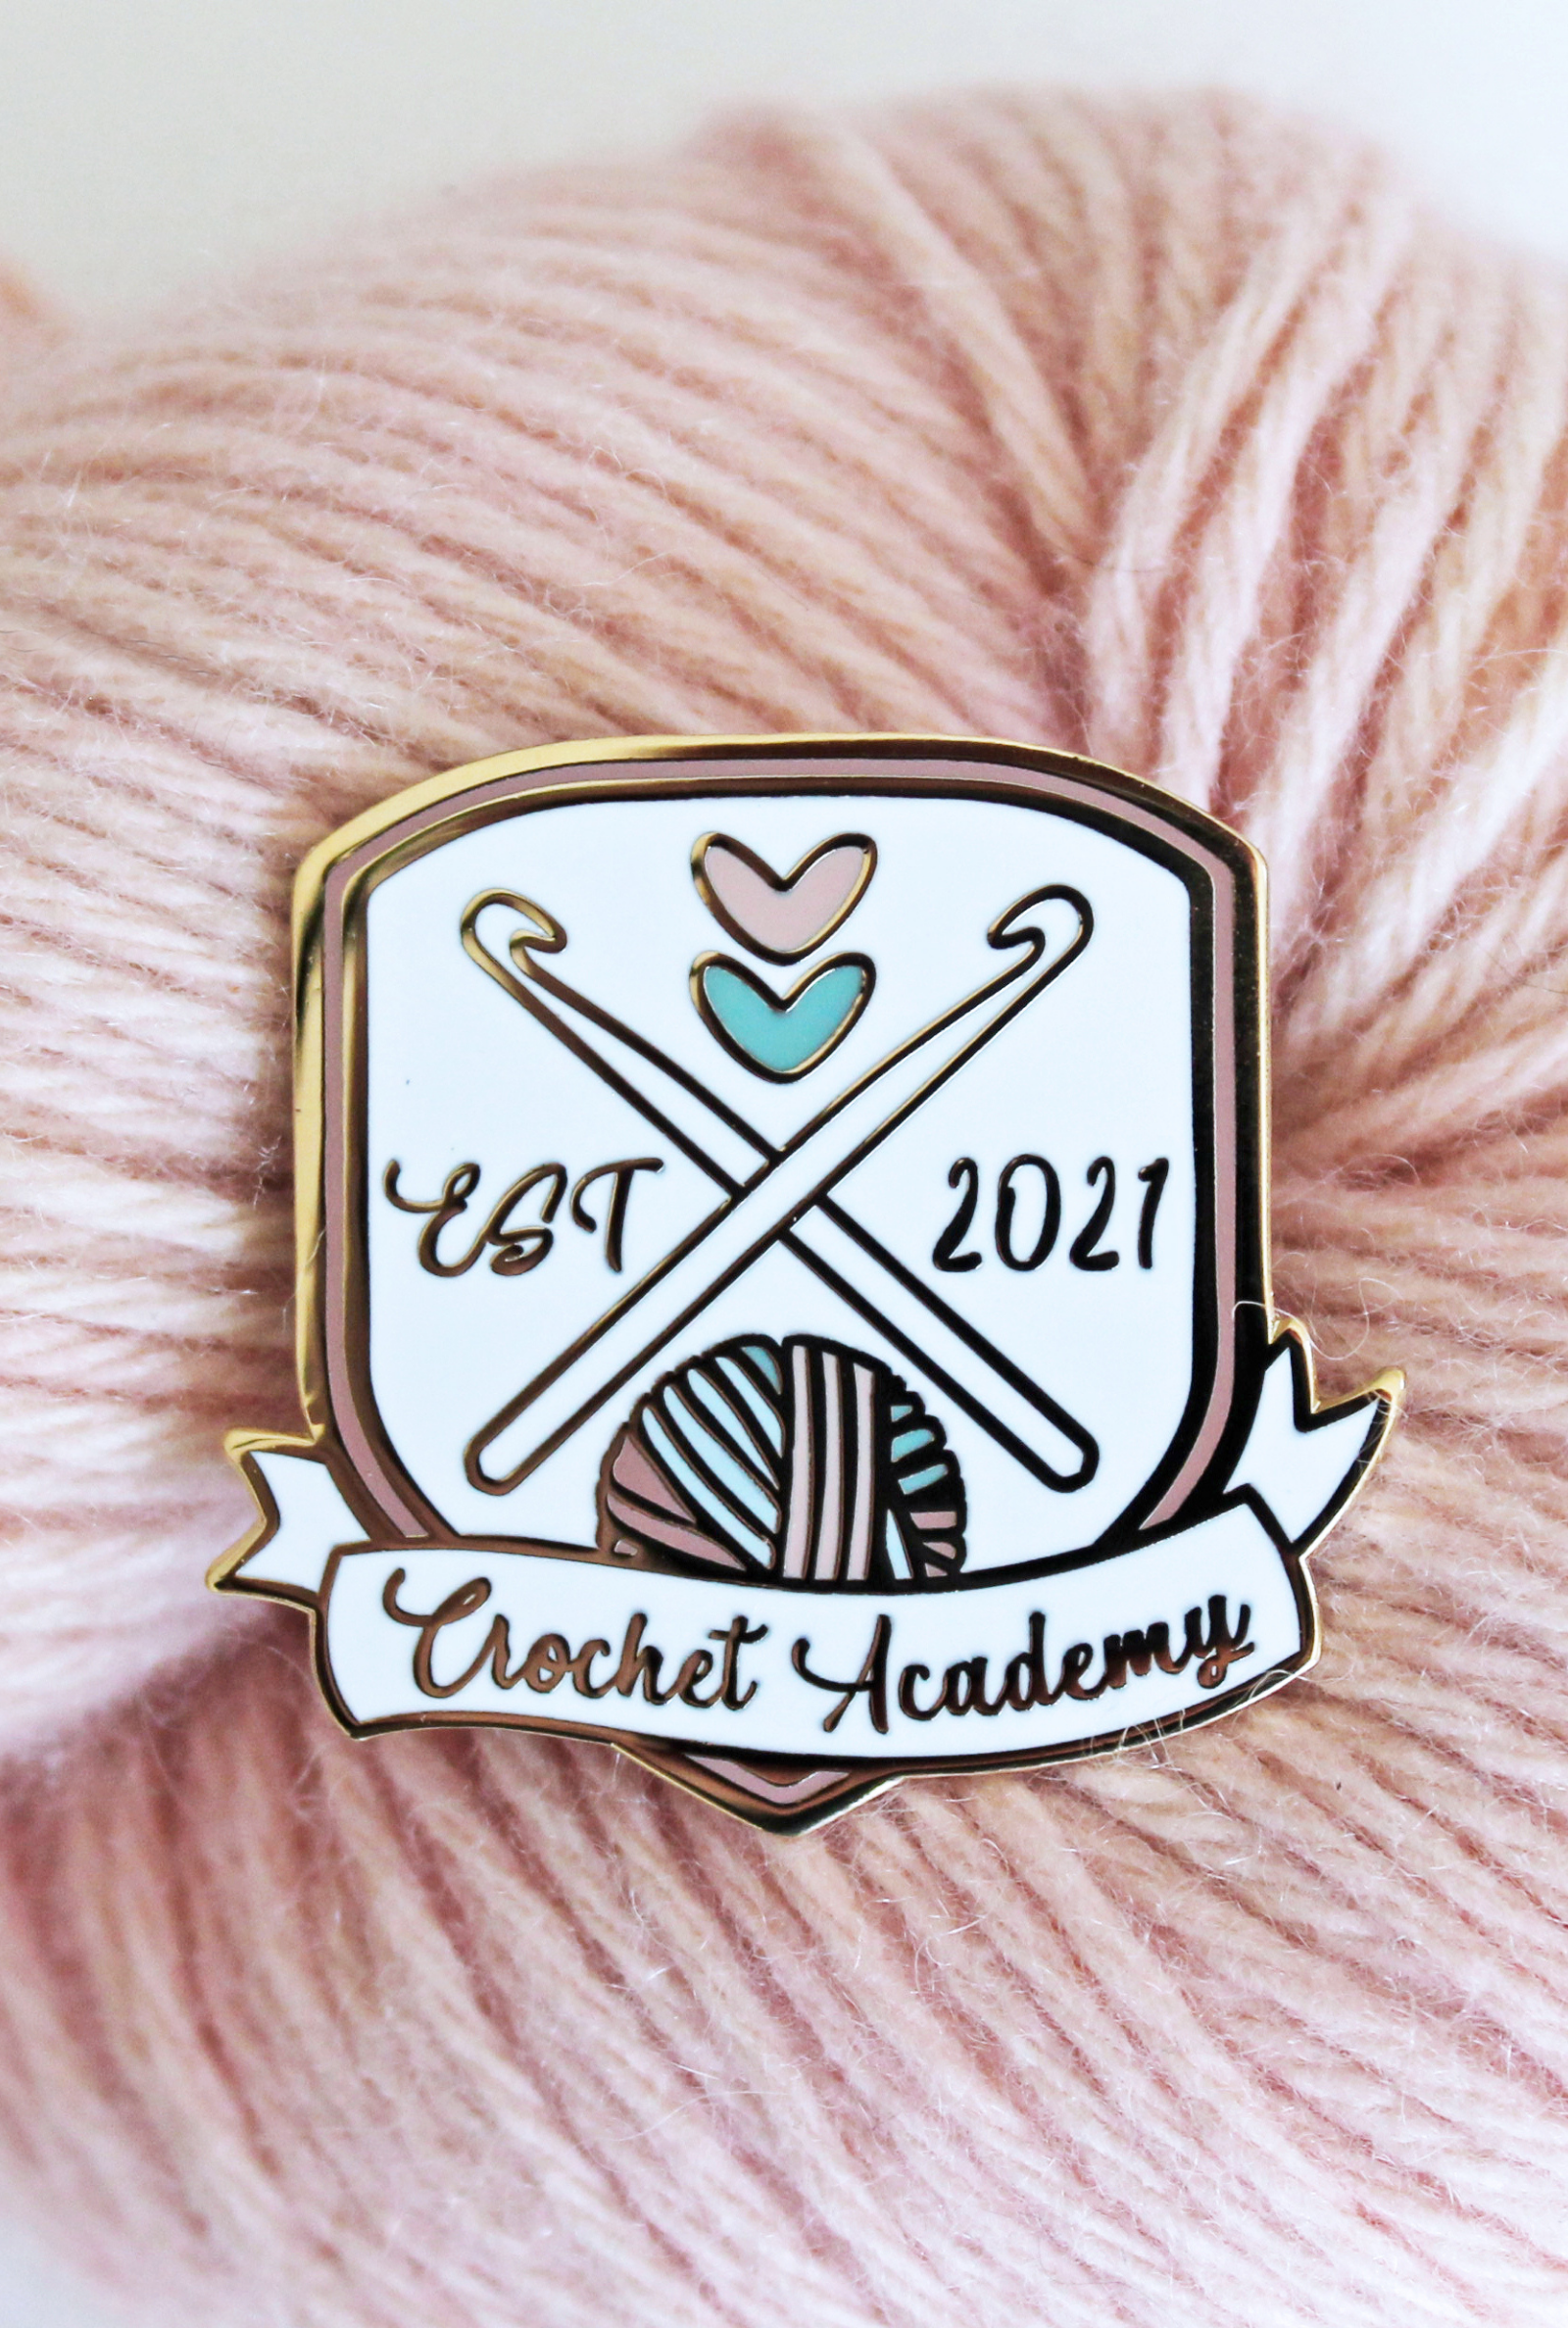 Crochet Academy 2021 Enamel Pin